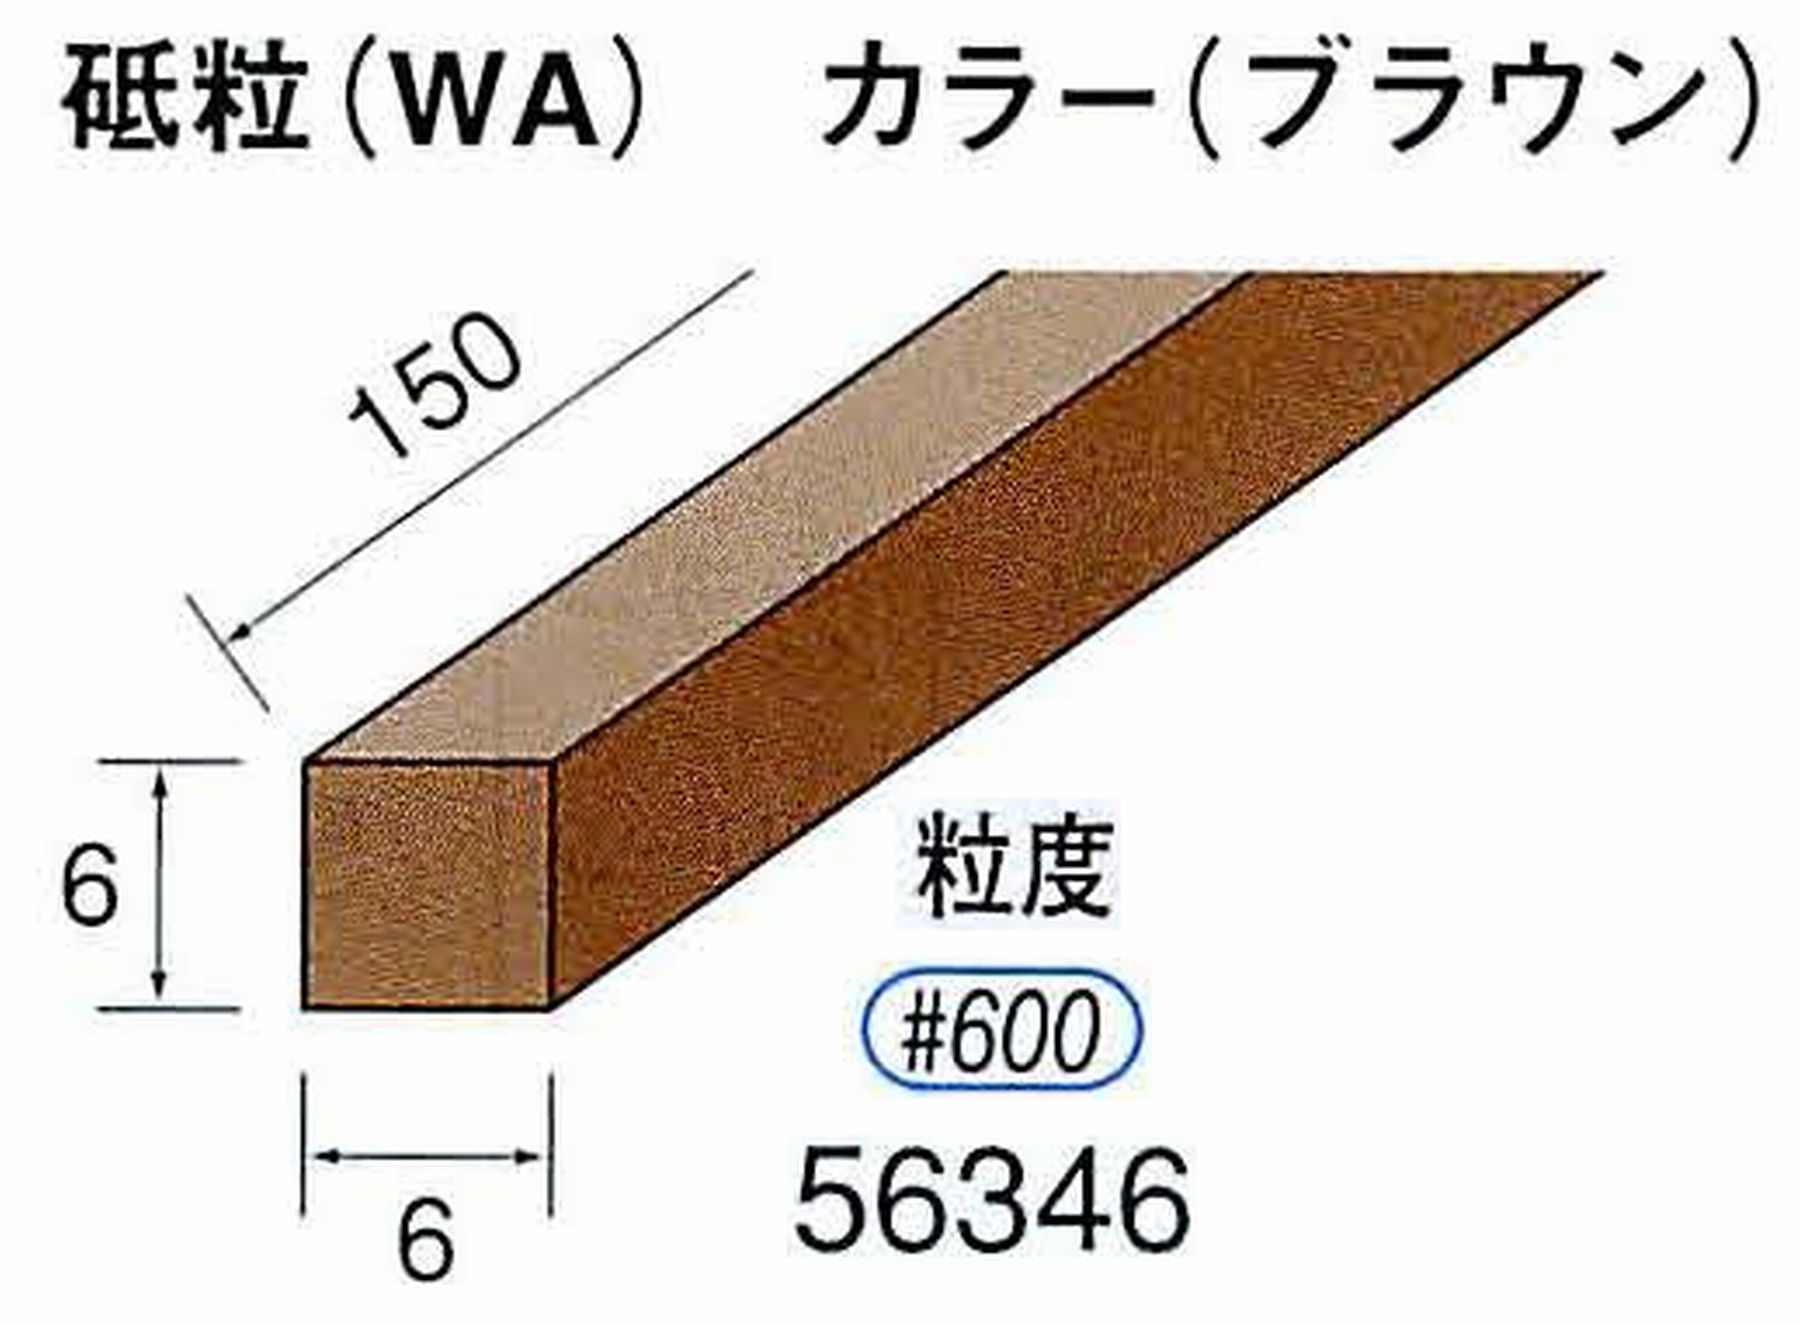 ナカニシ/NAKANISHI スティック砥石 ブラウン・フィニッシュシリーズ 砥粒(WA) 56346